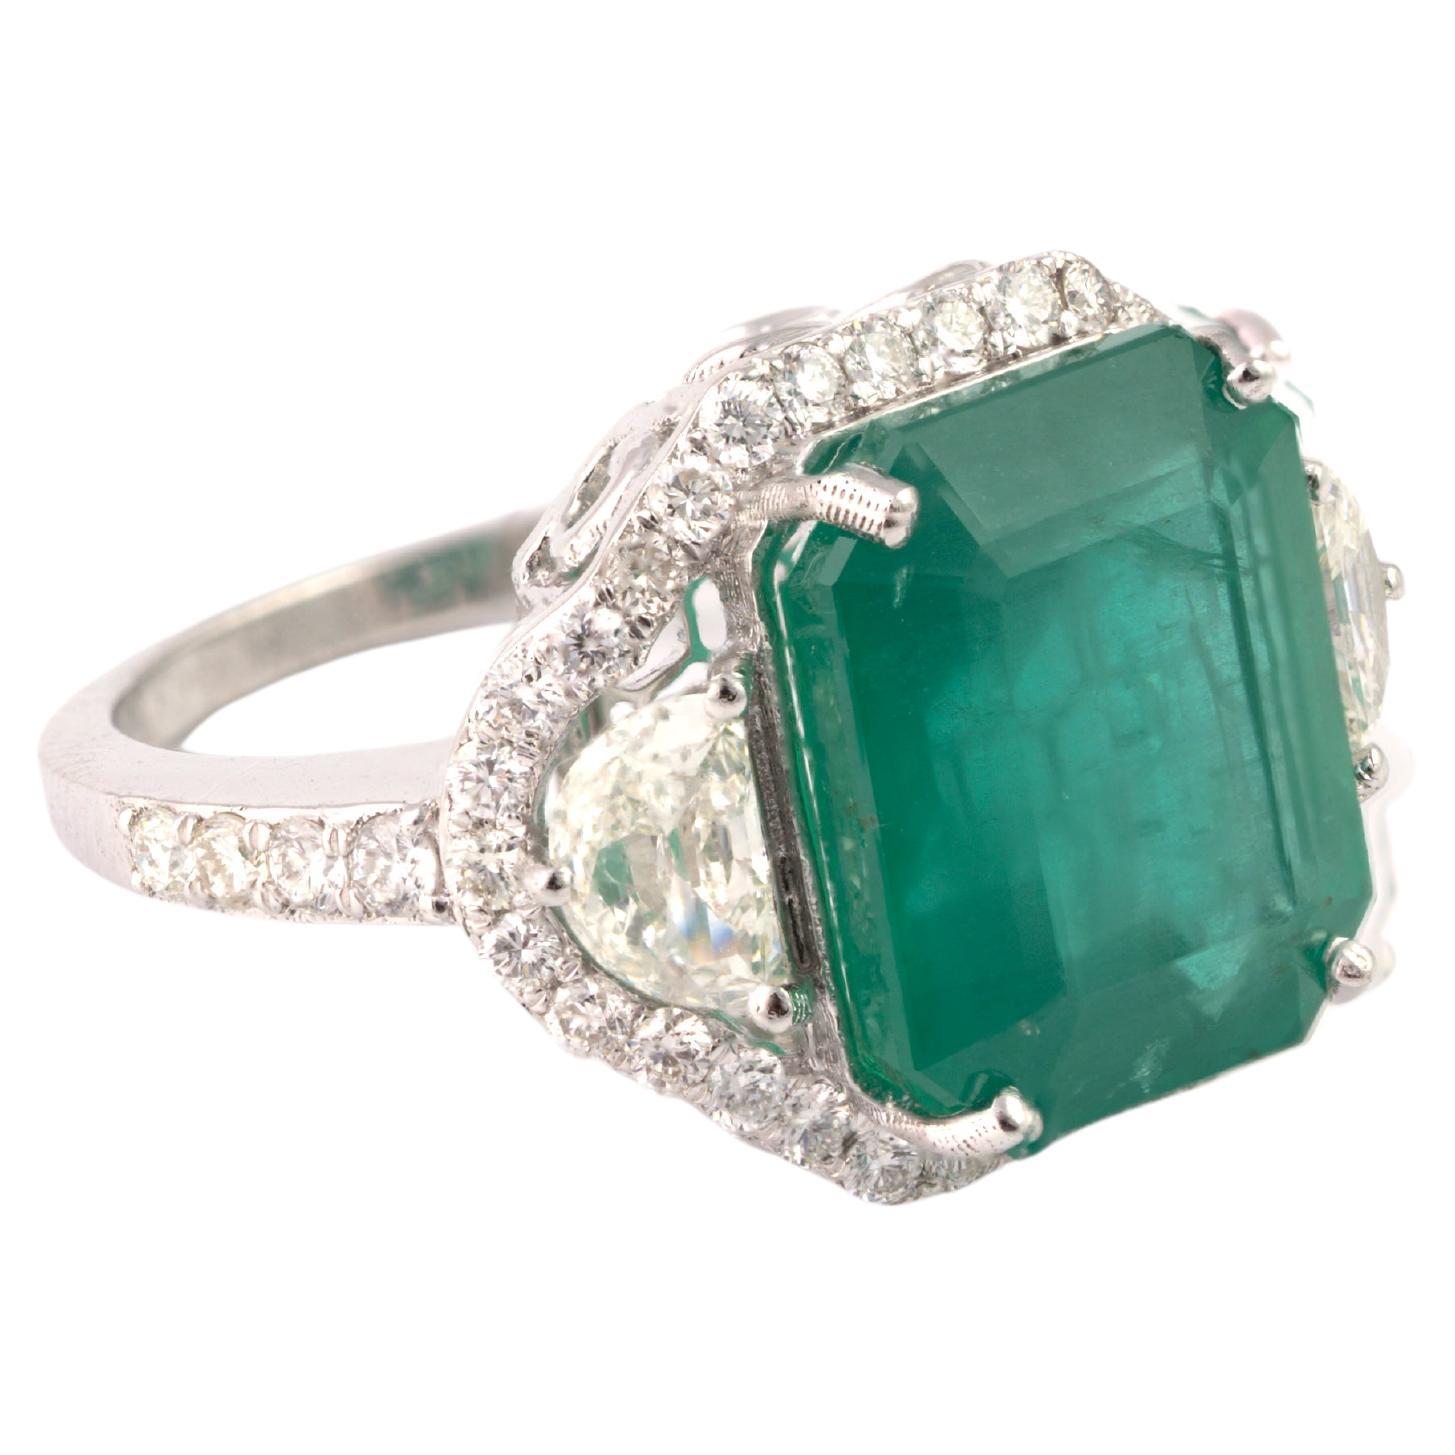 Natural Zambian Emerald 9.24 Carats and Diamonds Half Moon 1.01 Carats in 14k